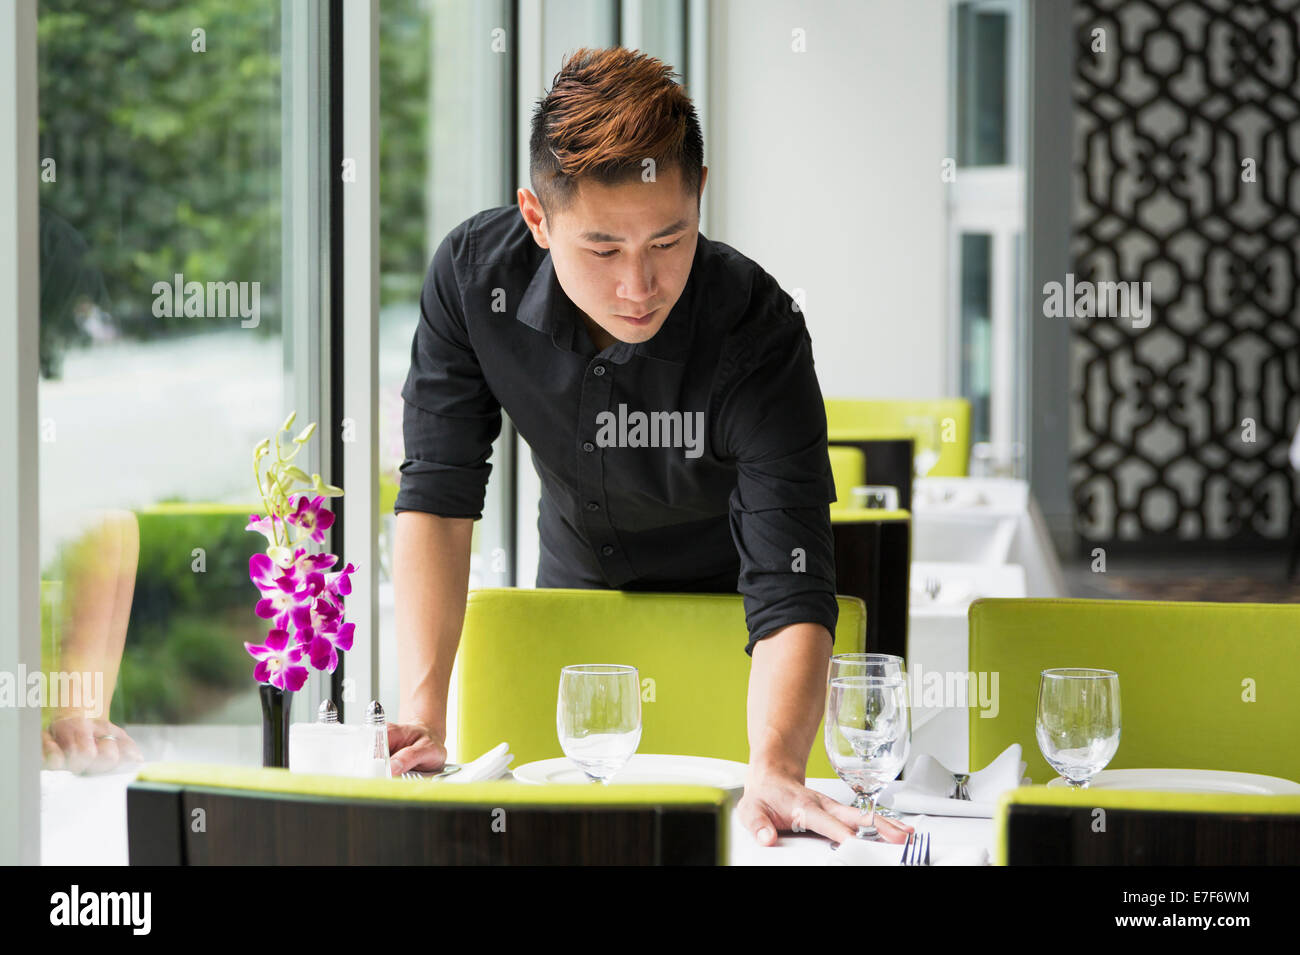 Asian waiter setting table in restaurant Stock Photo